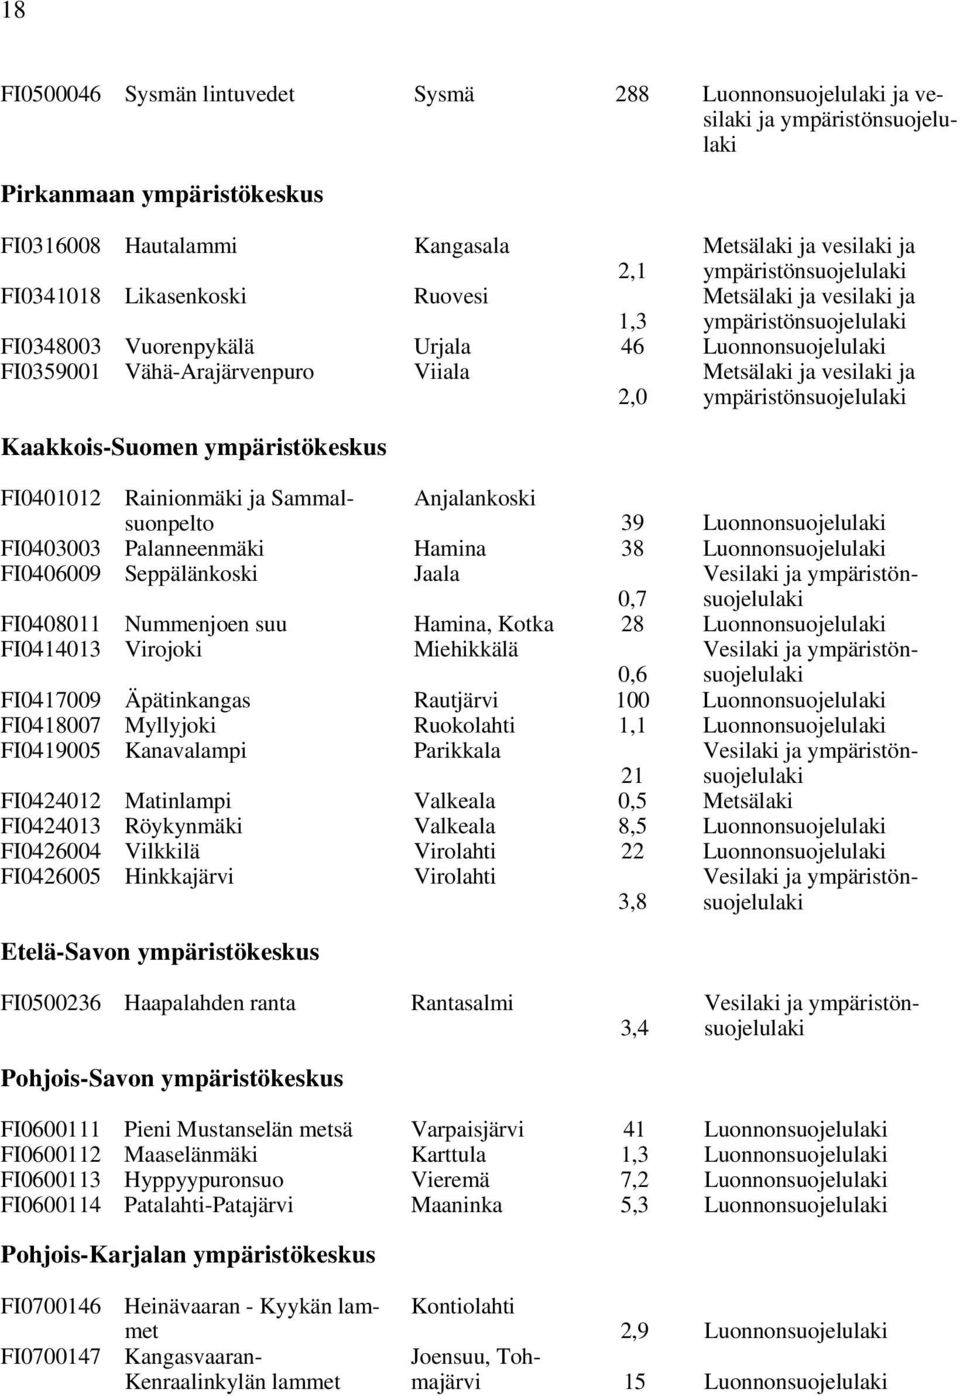 Metsälaki ja vesilaki ja ympäristönsuojelulaki Kaakkois-Suomen ympäristökeskus FI0401012 Rainionmäki ja Sammalsuonpelto Anjalankoski 39 Luonnonsuojelulaki FI0403003 Palanneenmäki Hamina 38